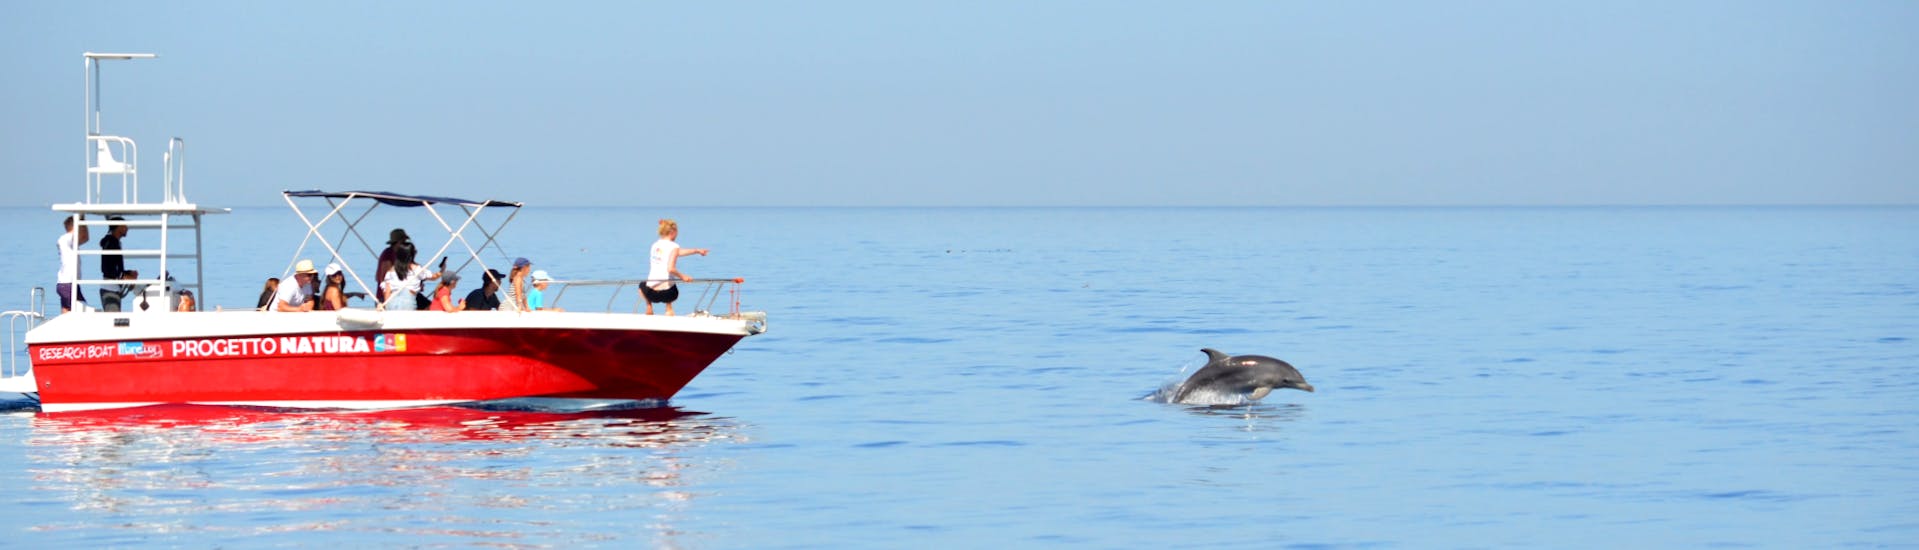 Un gruppo di partecipanti all'avvistamento delfini in barca con snorkeling ad Alghero ha appena scorto un gruppo di mammiferi con Progetto Natura.